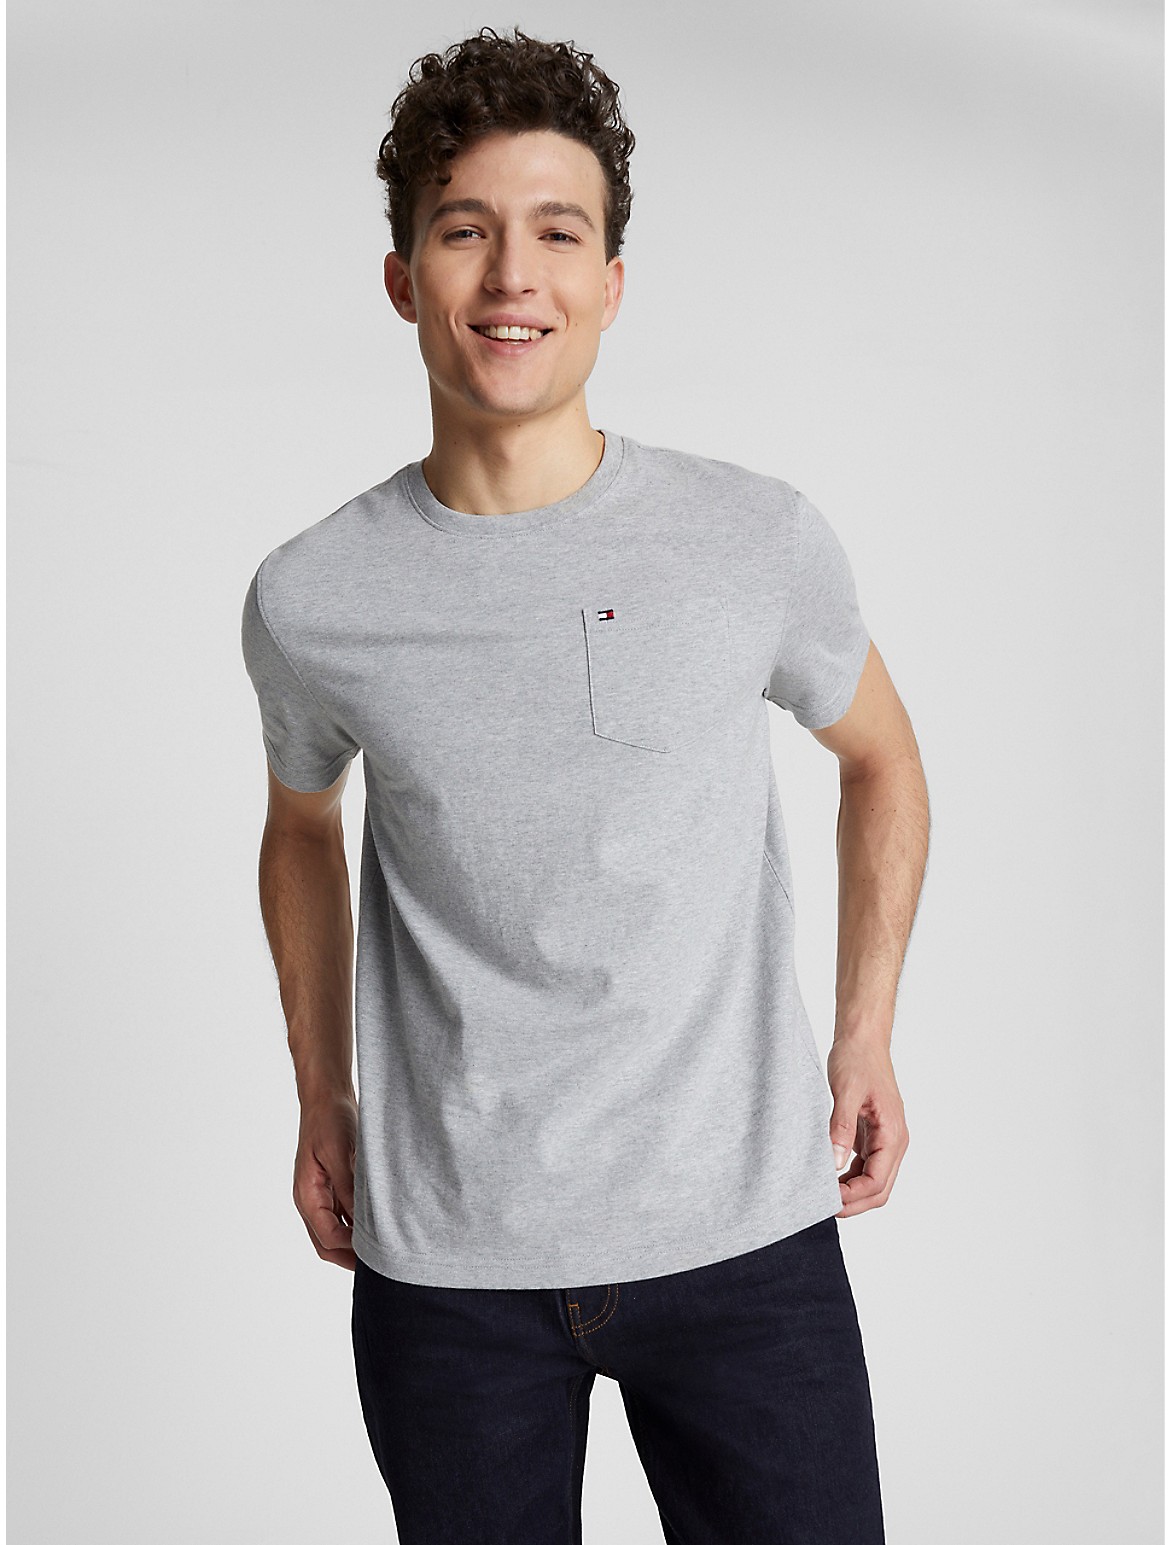 Tommy Hilfiger Men's Solid Pocket T-Shirt